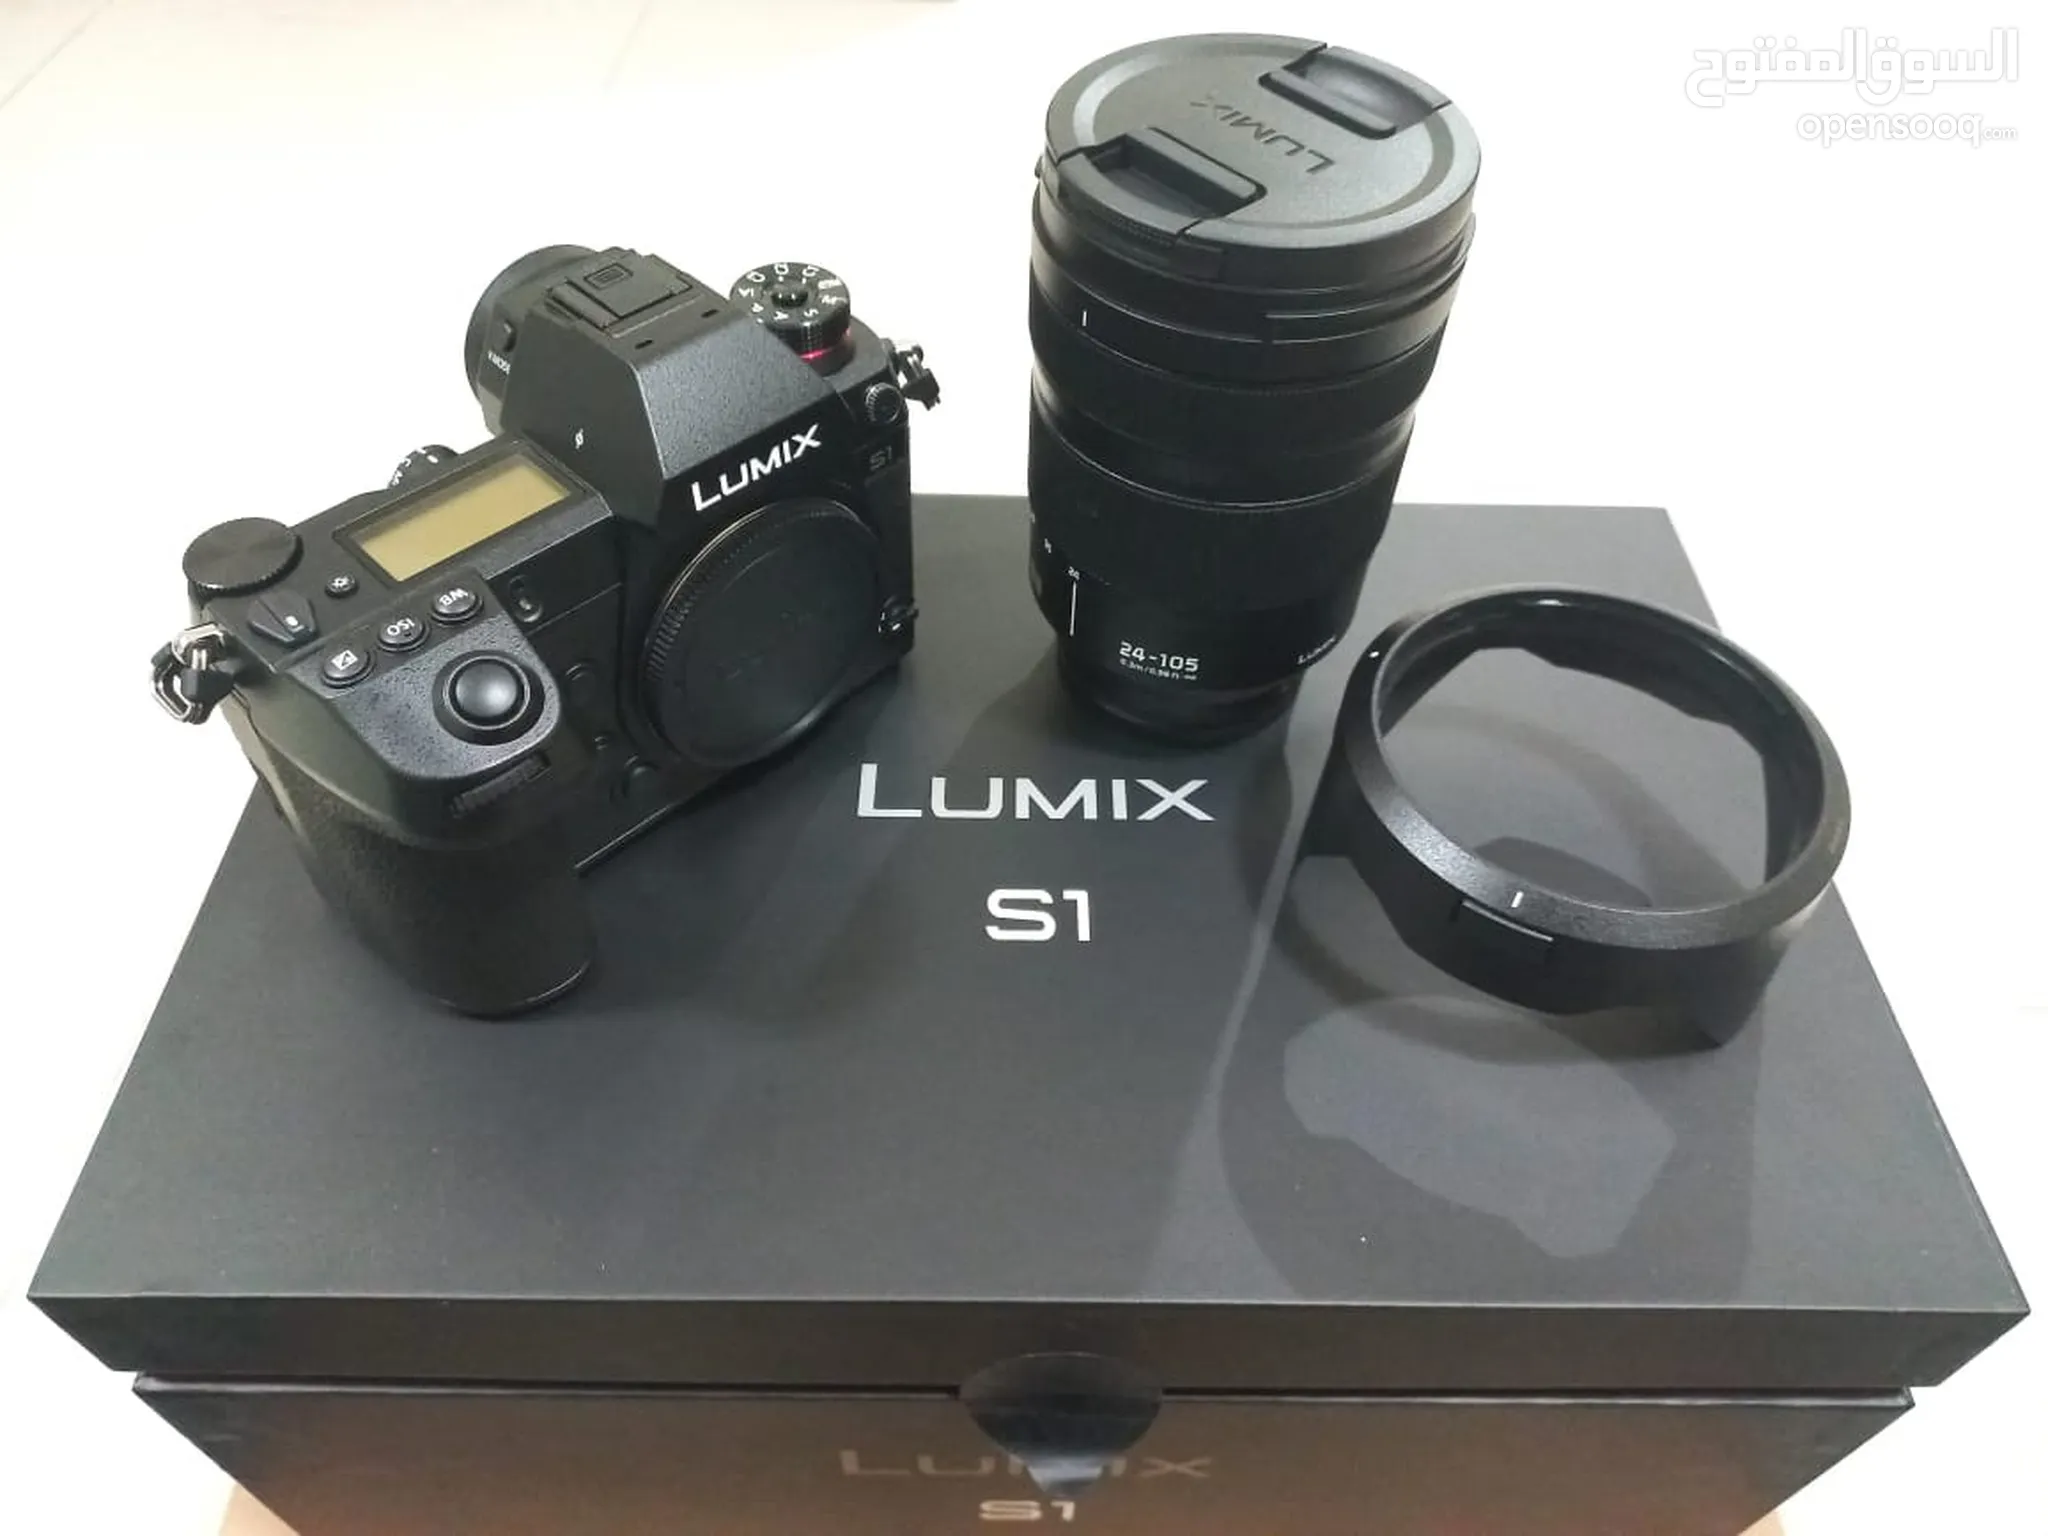 كاميرات باناسونيك للبيع : lumix : 4K : شريط صغير : ديجيتال : فيديو وصور :  الإمارات | السوق المفتوح